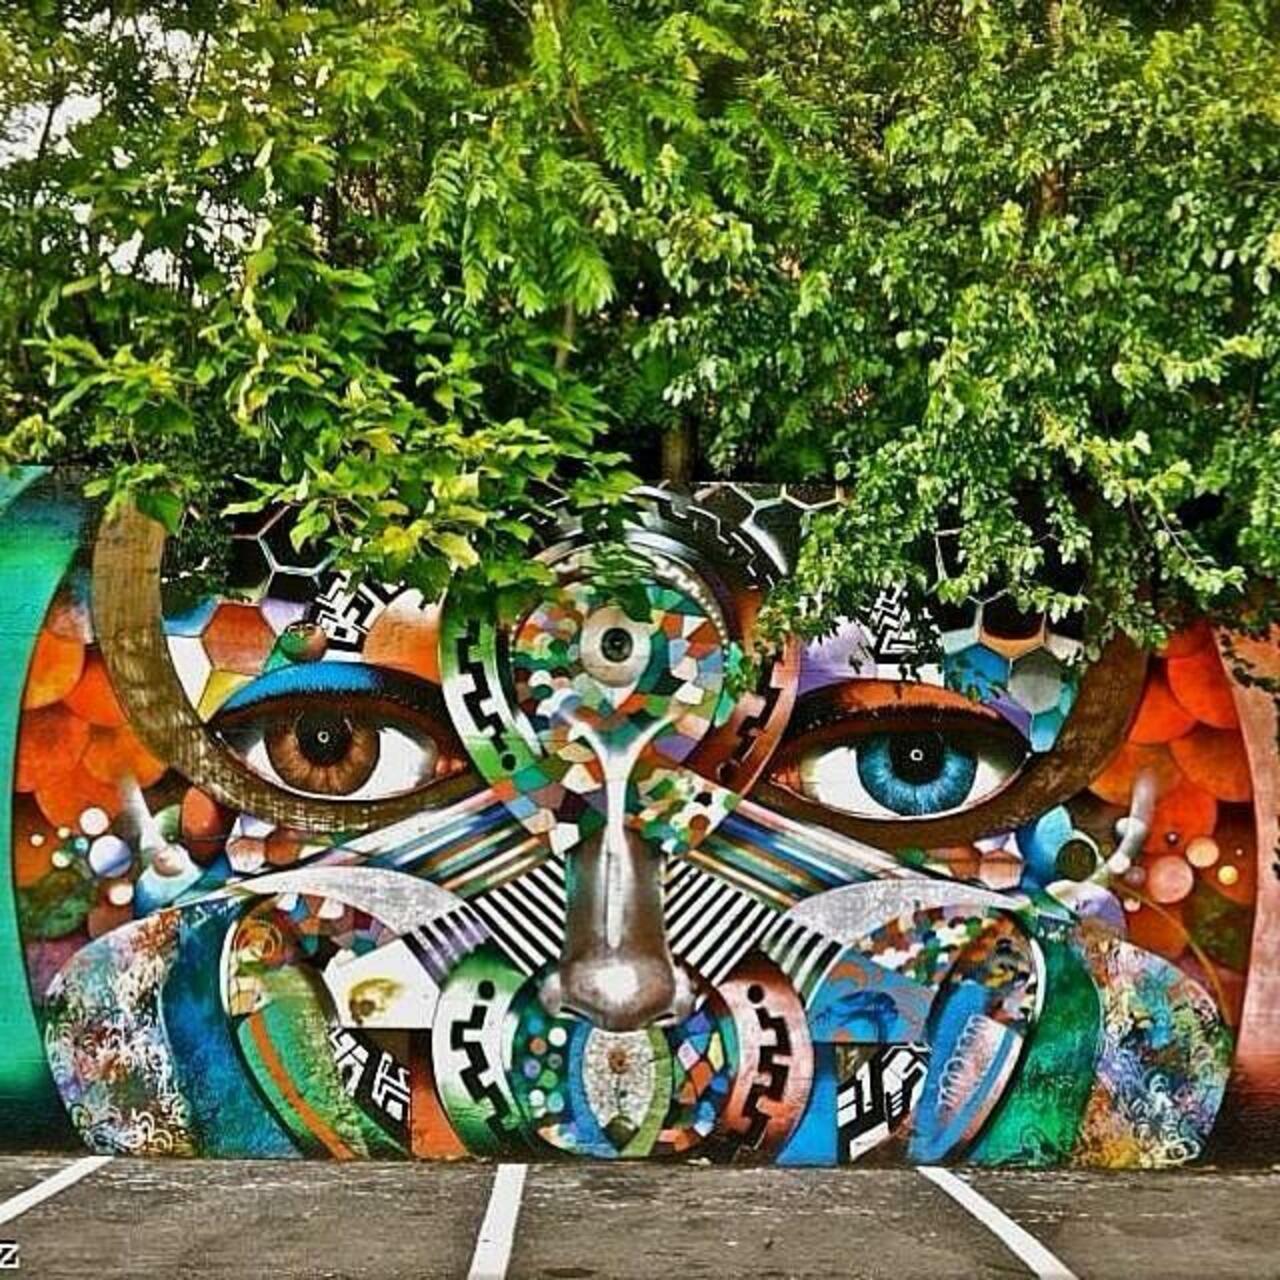 Artist @chorboogie new nature & Street Art piece. #art #mural #graffiti #streetart http://t.co/KdezPUHw82